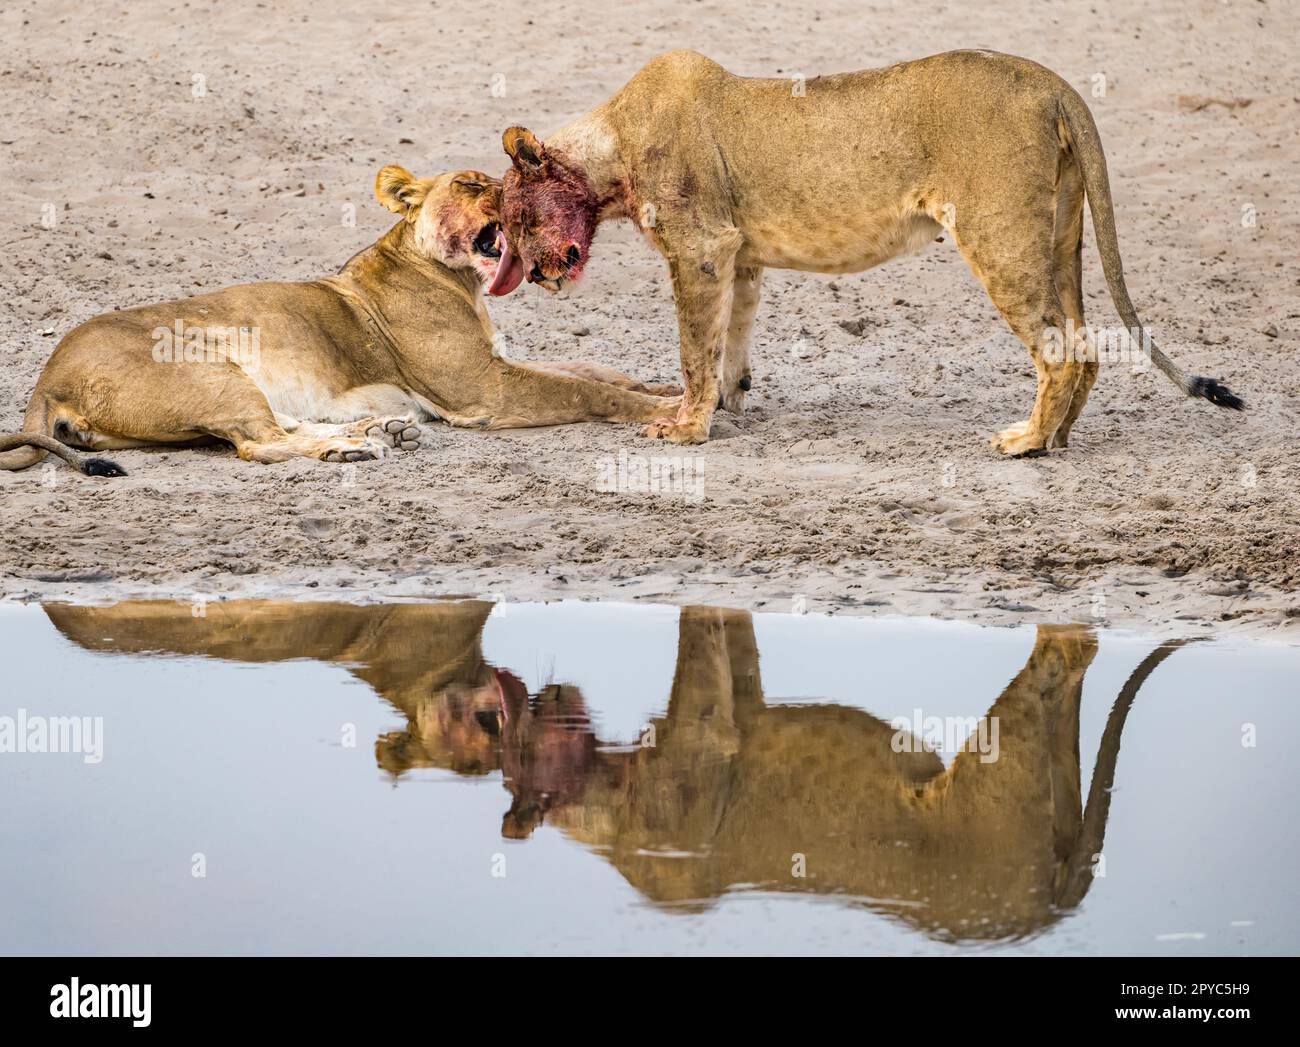 Un leone femmina che lecca la faccia della sua prole maschile giovanile dopo un'uccisione in una buca d'acqua, deserto di Kalahari, Botswana, Africa Foto Stock